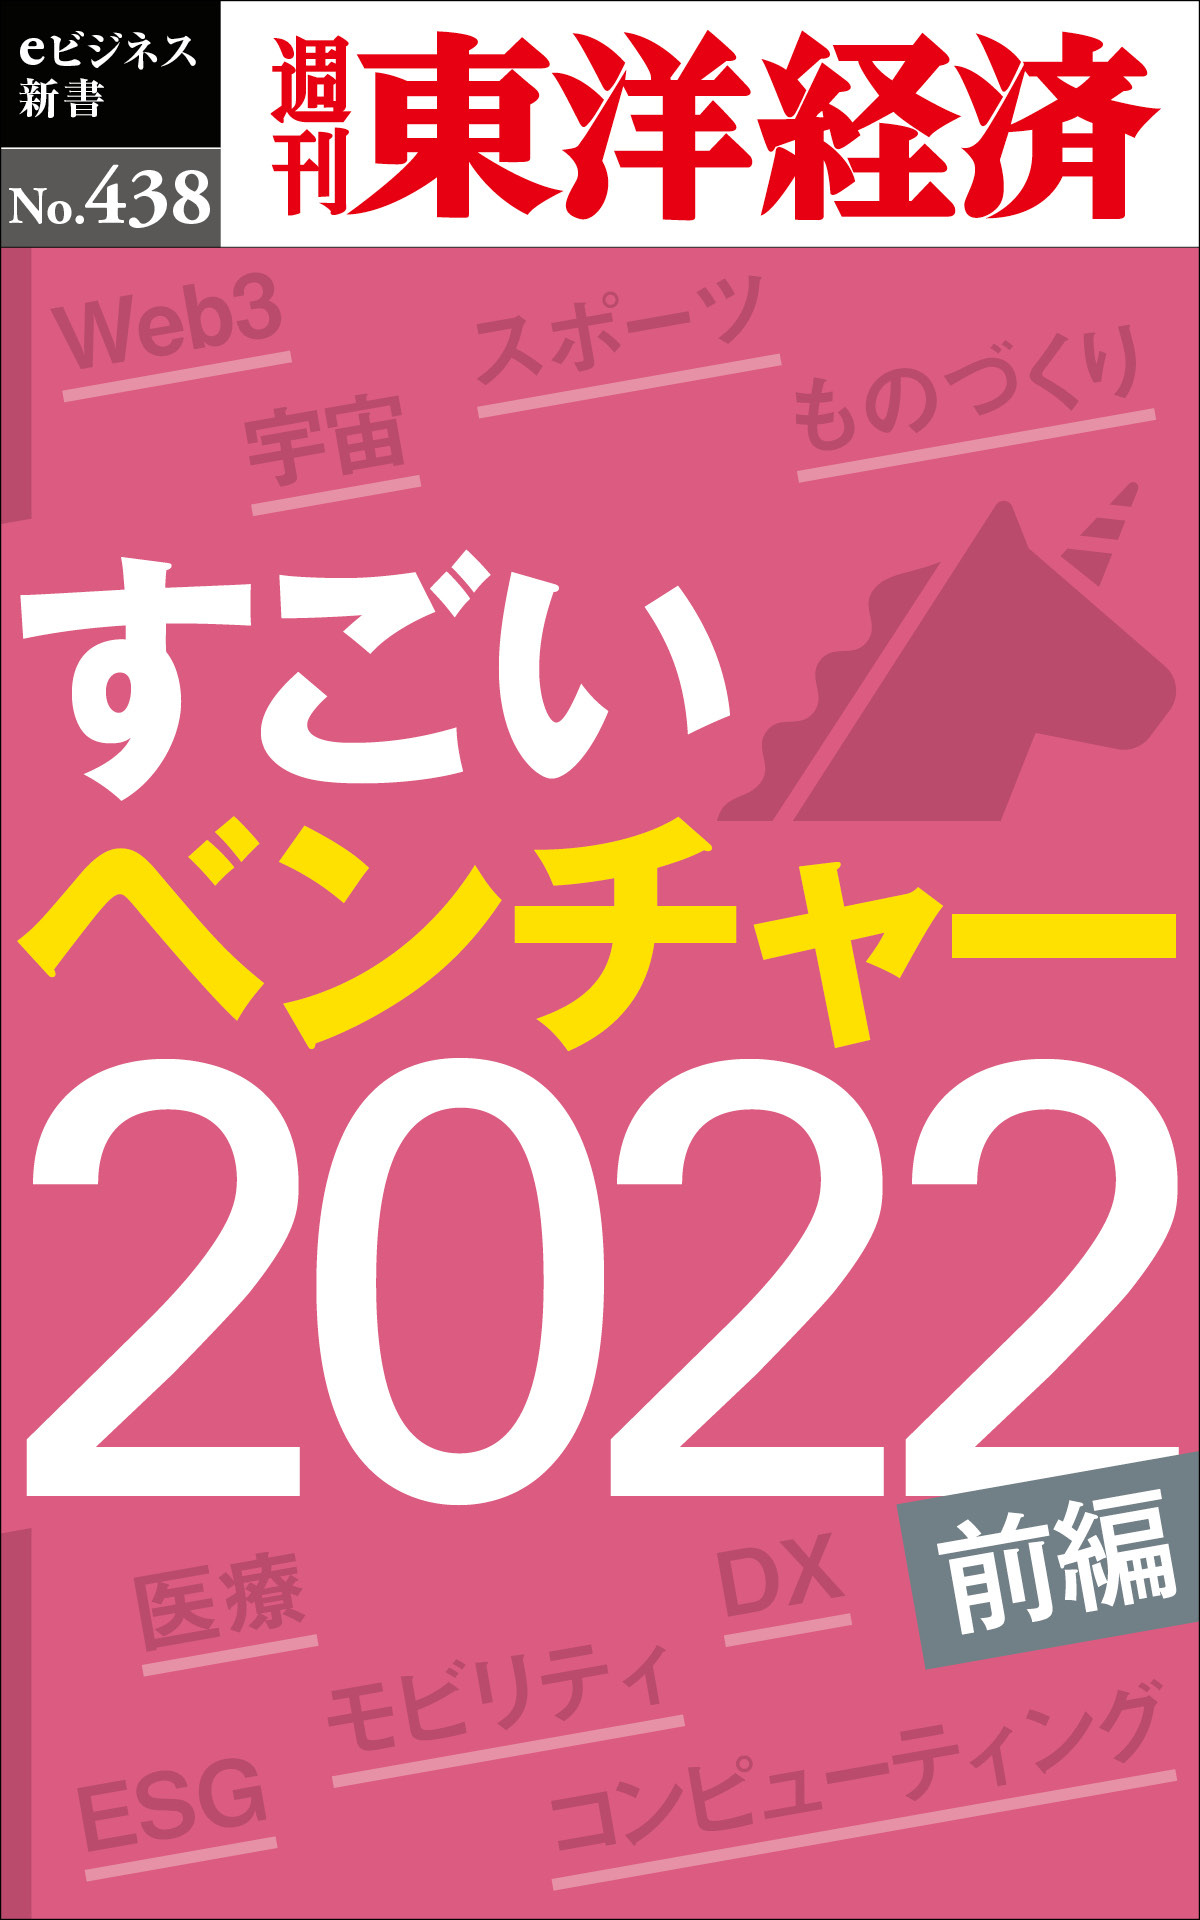 すごいベンチャー 2022【前編】